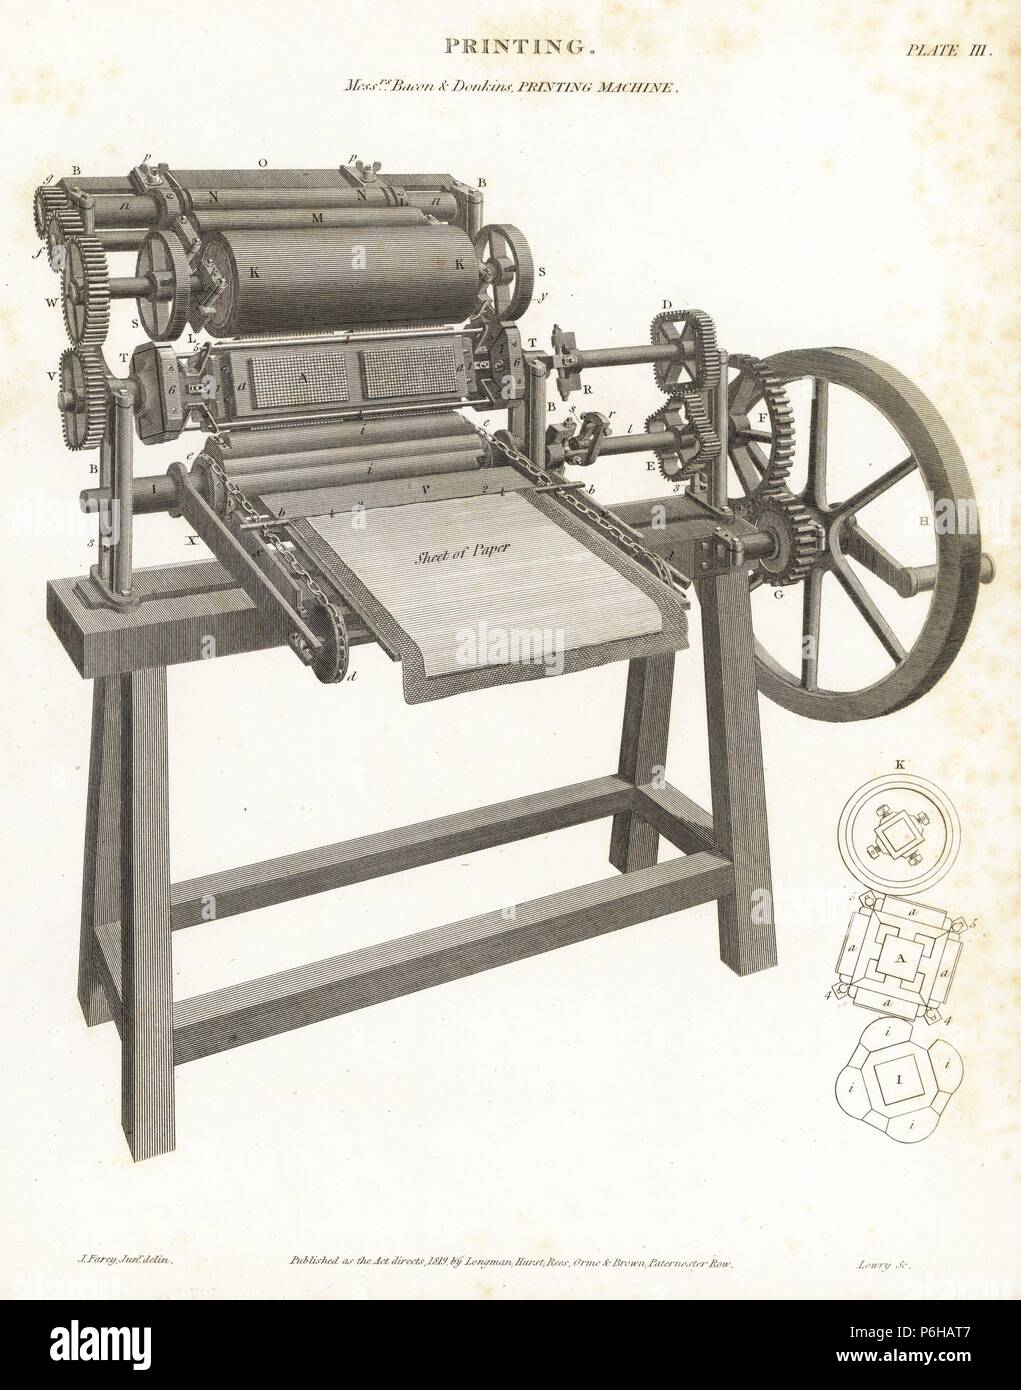 Première presse rotative machine impression imprimante breveté par Richard Bacon et ingénieur Bryan Donkin, 1813. La gravure sur cuivre par Wilson Lowry après une illustration par J. Farey d'Abraham Rees' 'Cyclopedia ou Universal Dictionary, Londres, 1816. Banque D'Images